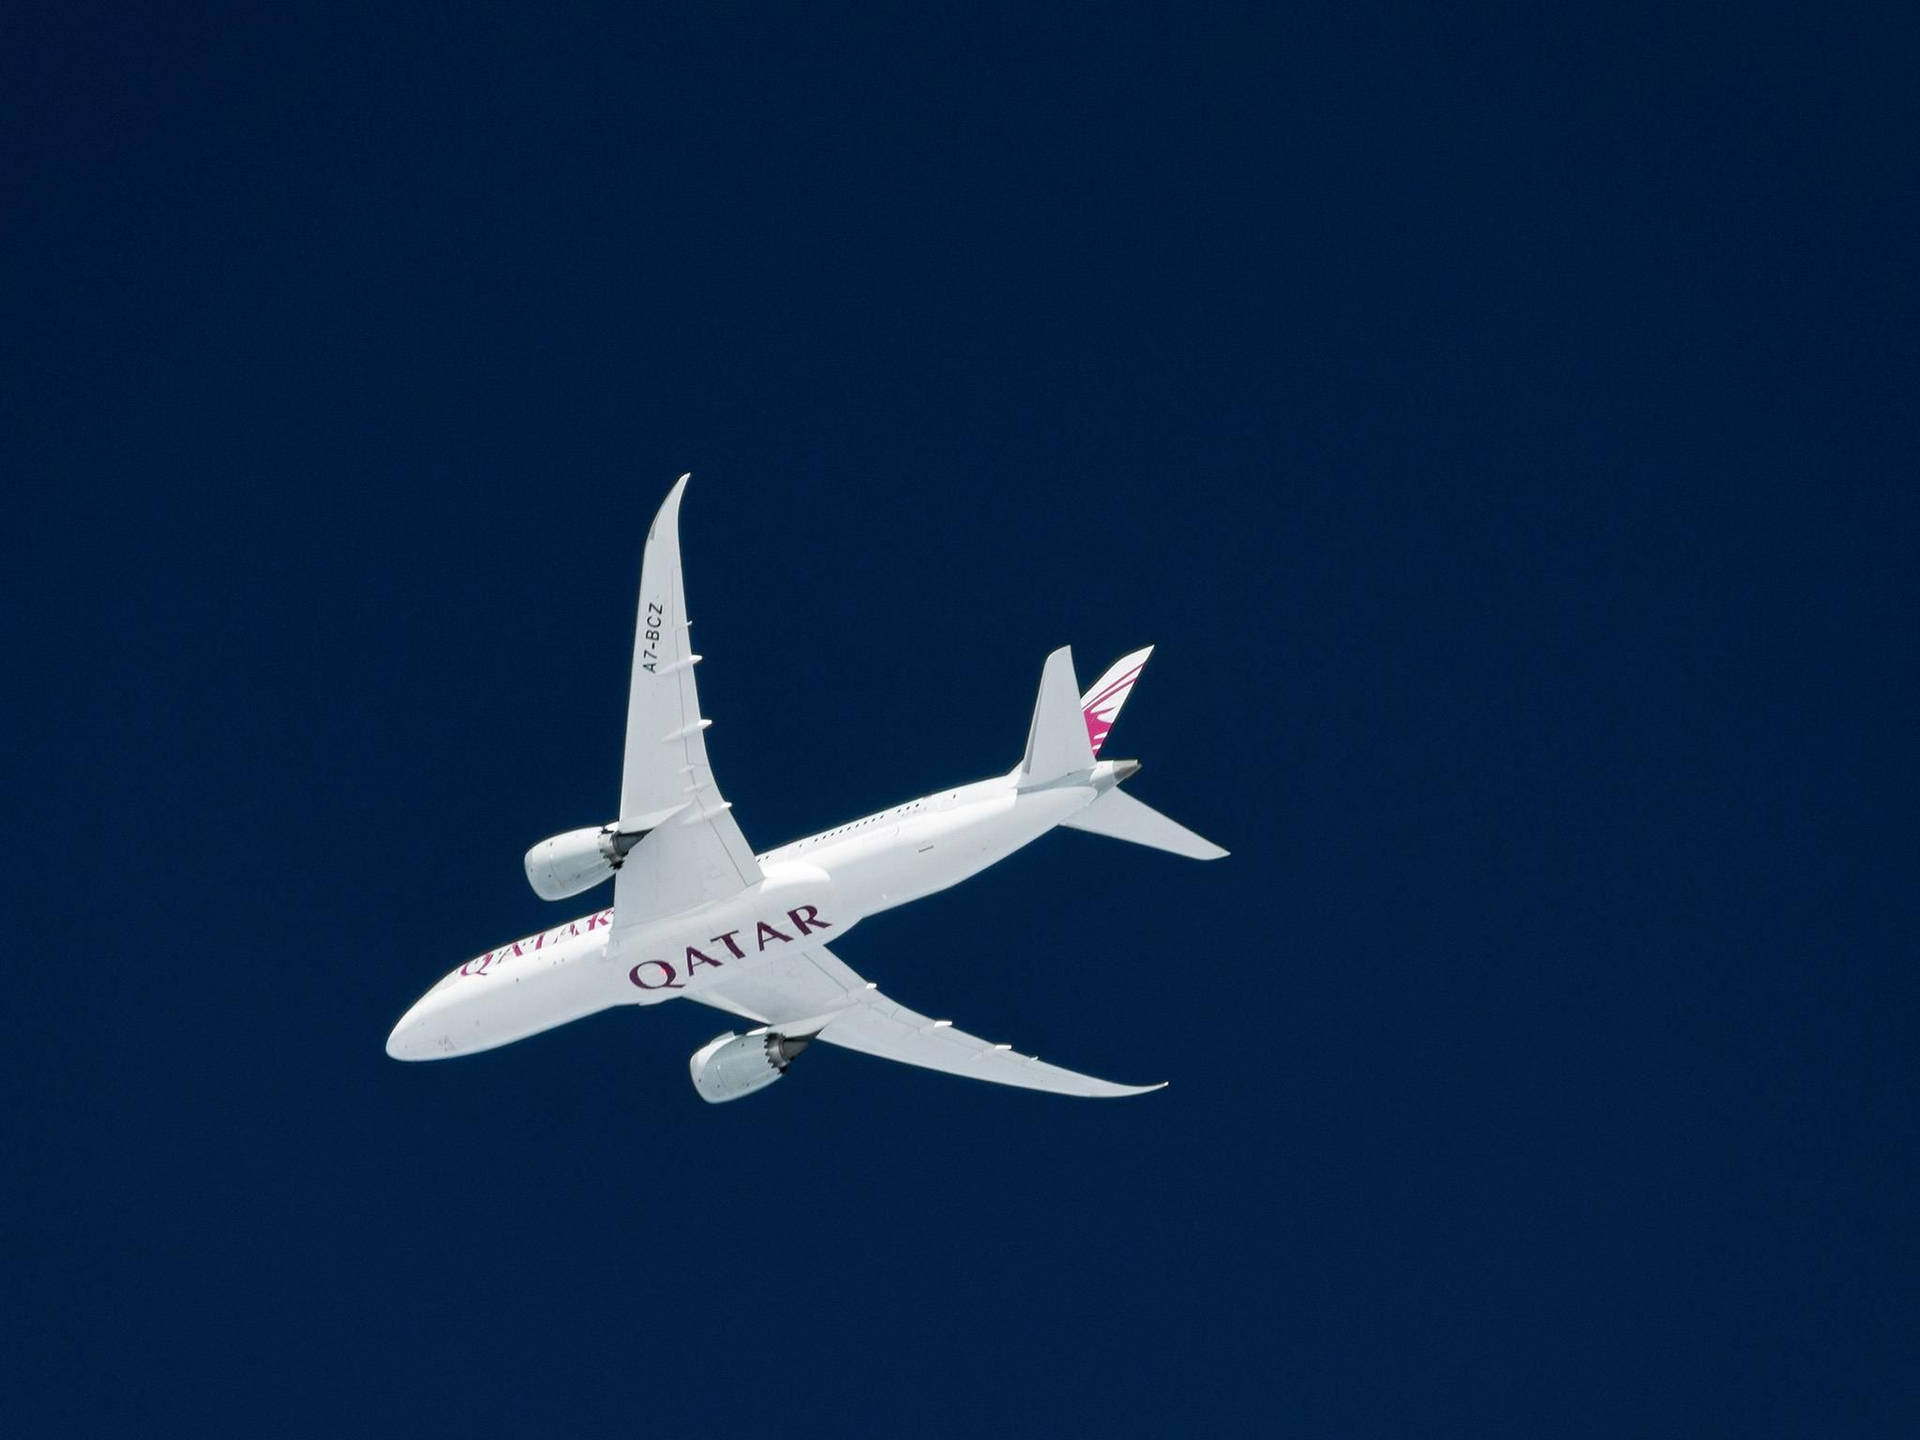 Qatar Airways ligner et sølv-vingede dragerfly, der flyver gennem et blåt univers. Wallpaper